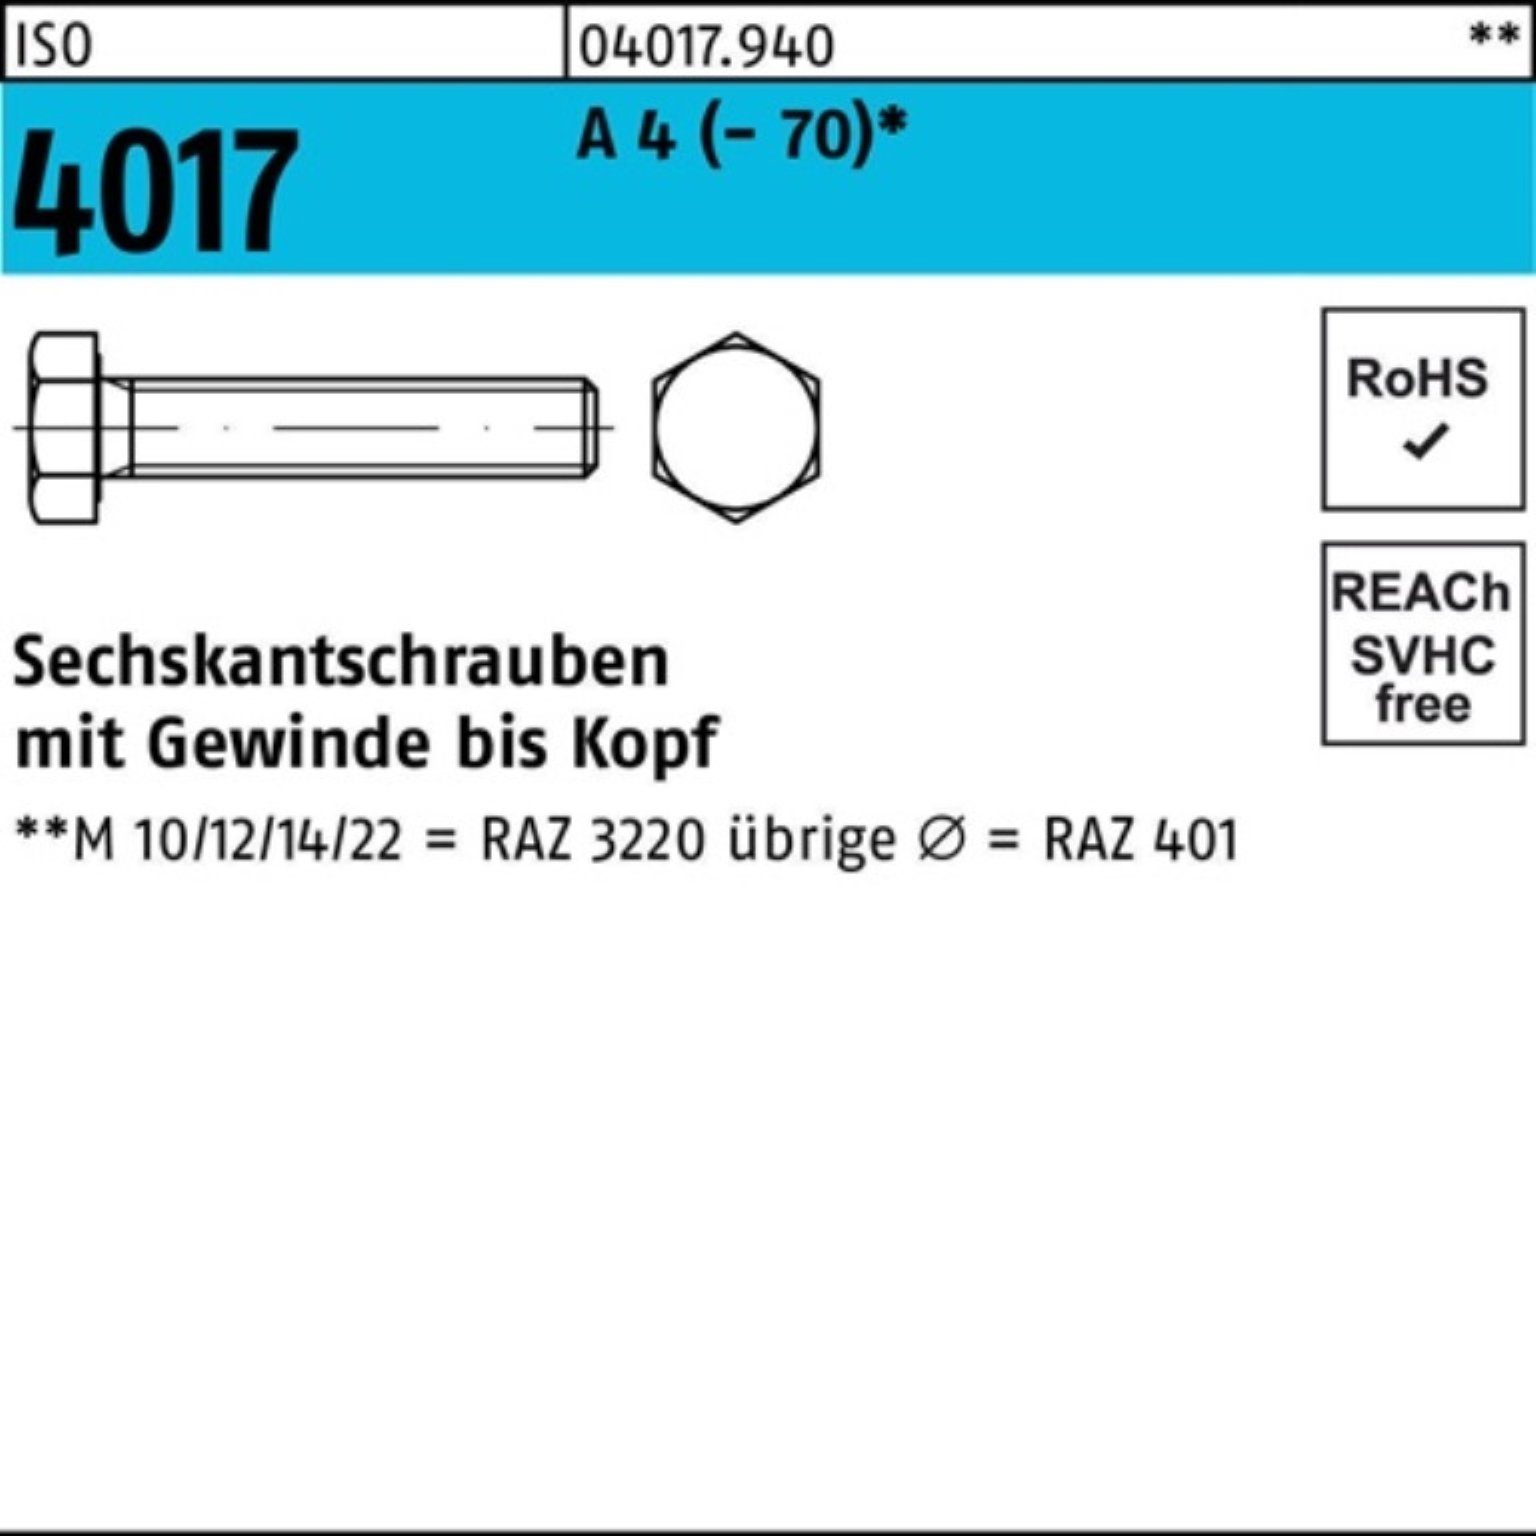 Bufab Sechskantschraube 100er Pack Sechskantschraube ISO 4017 VG M16x 180 A 4 (70) 1 Stück | Schrauben